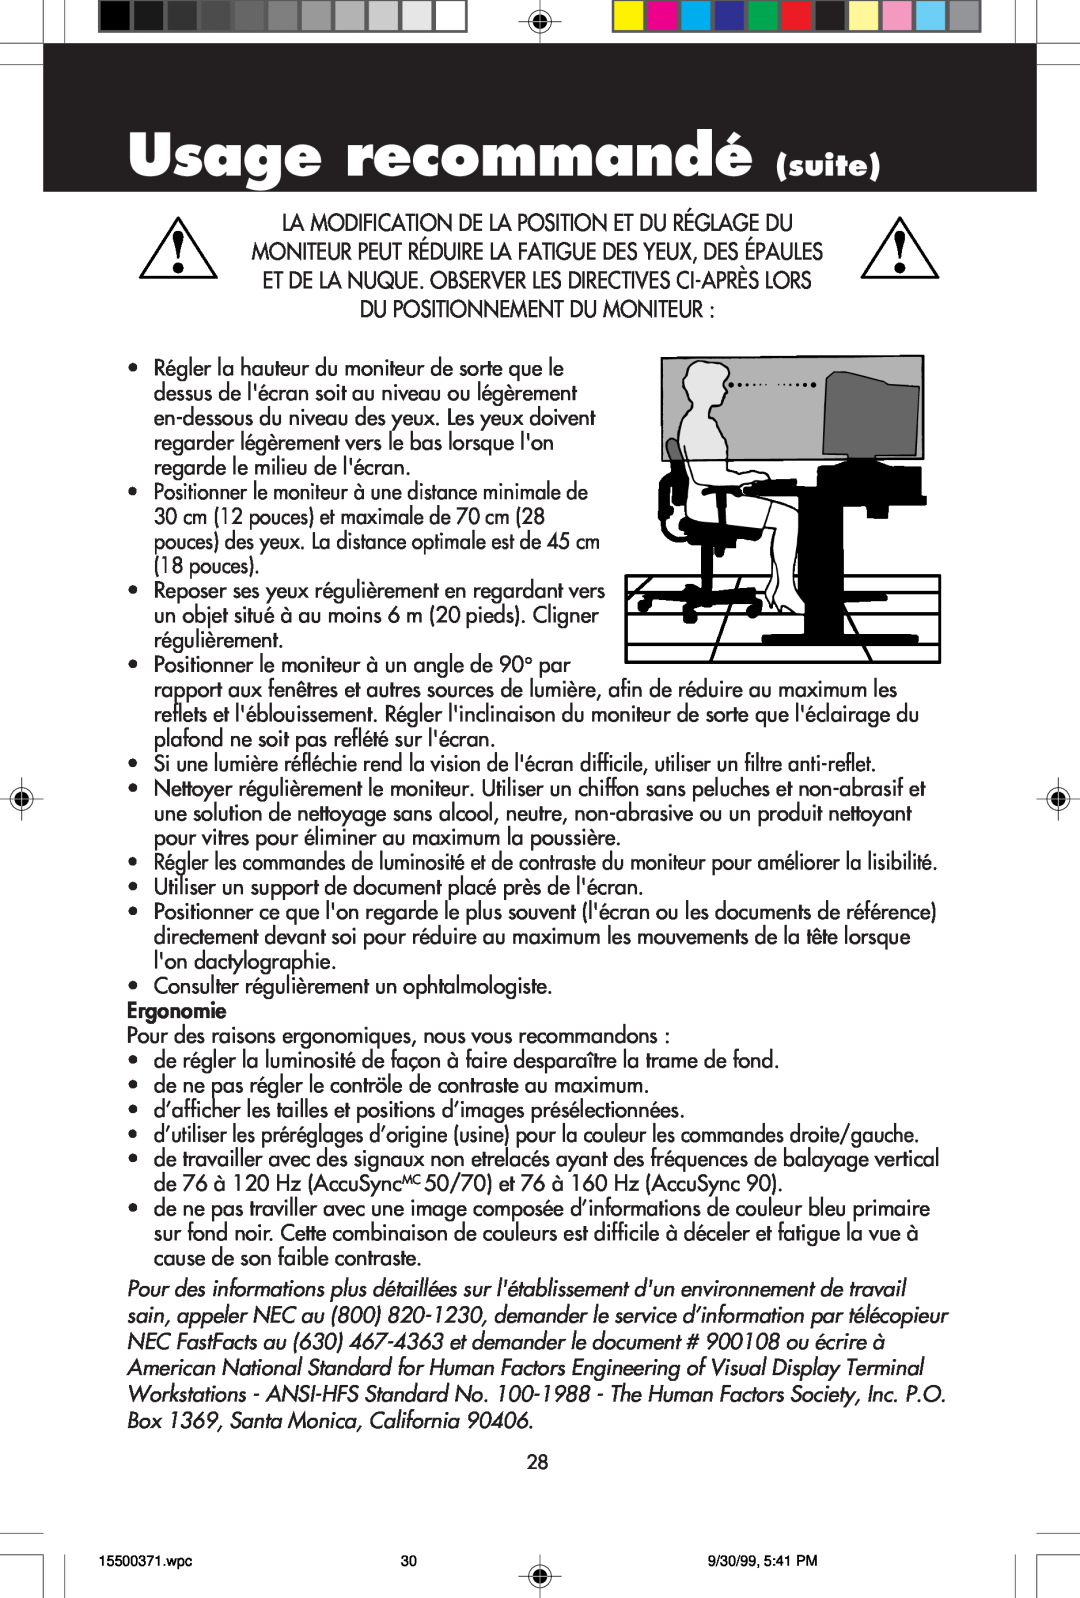 NEC N9701, N9501 Usage recommandé suite, La Modification De La Position Et Du Réglage Du, Du Positionnement Du Moniteur 